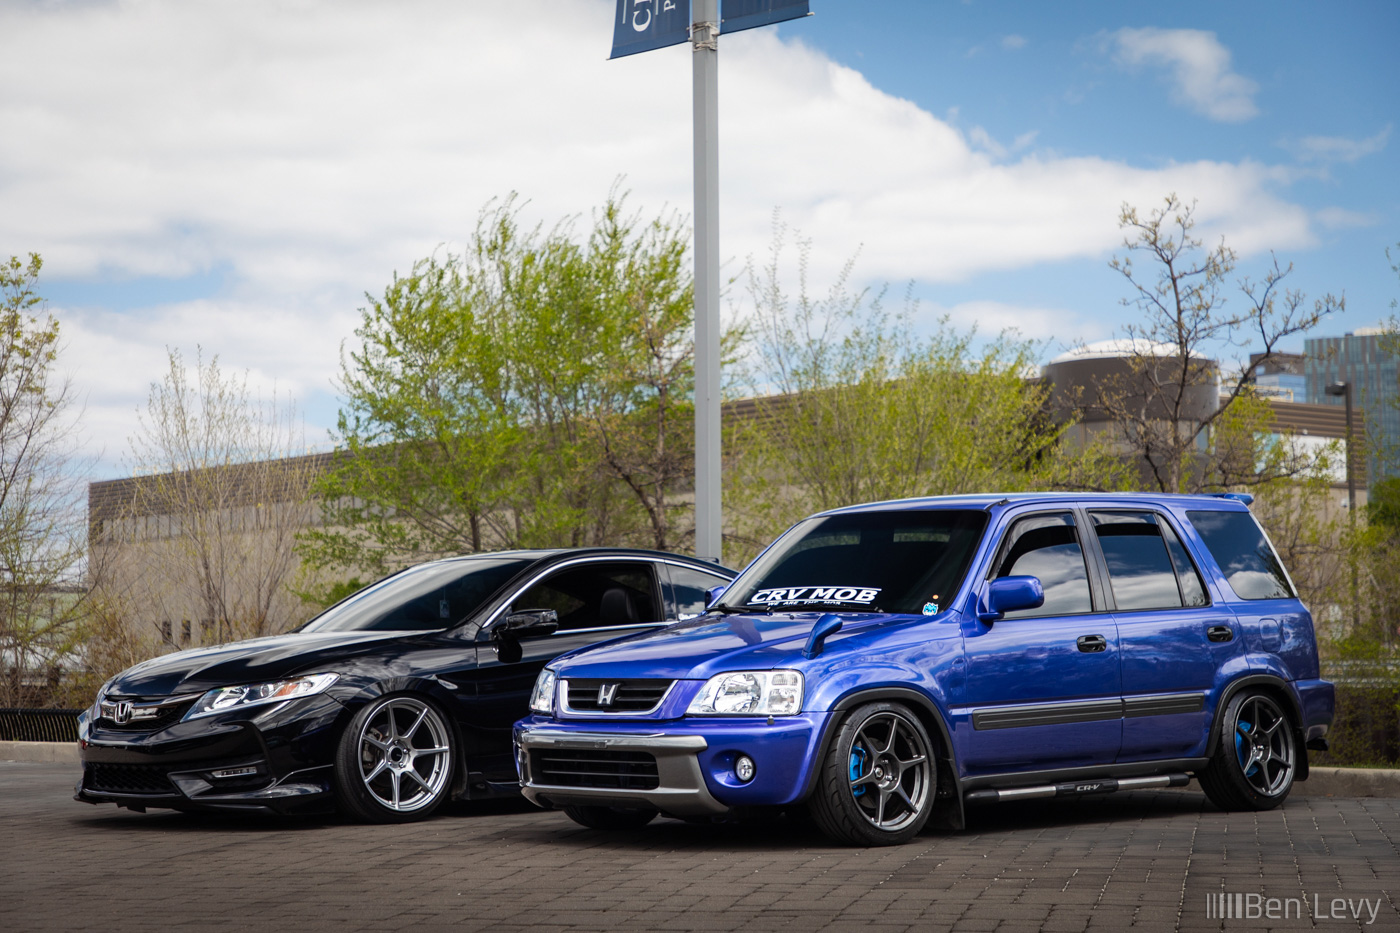 Black Accord and Blue CR-V at car meet